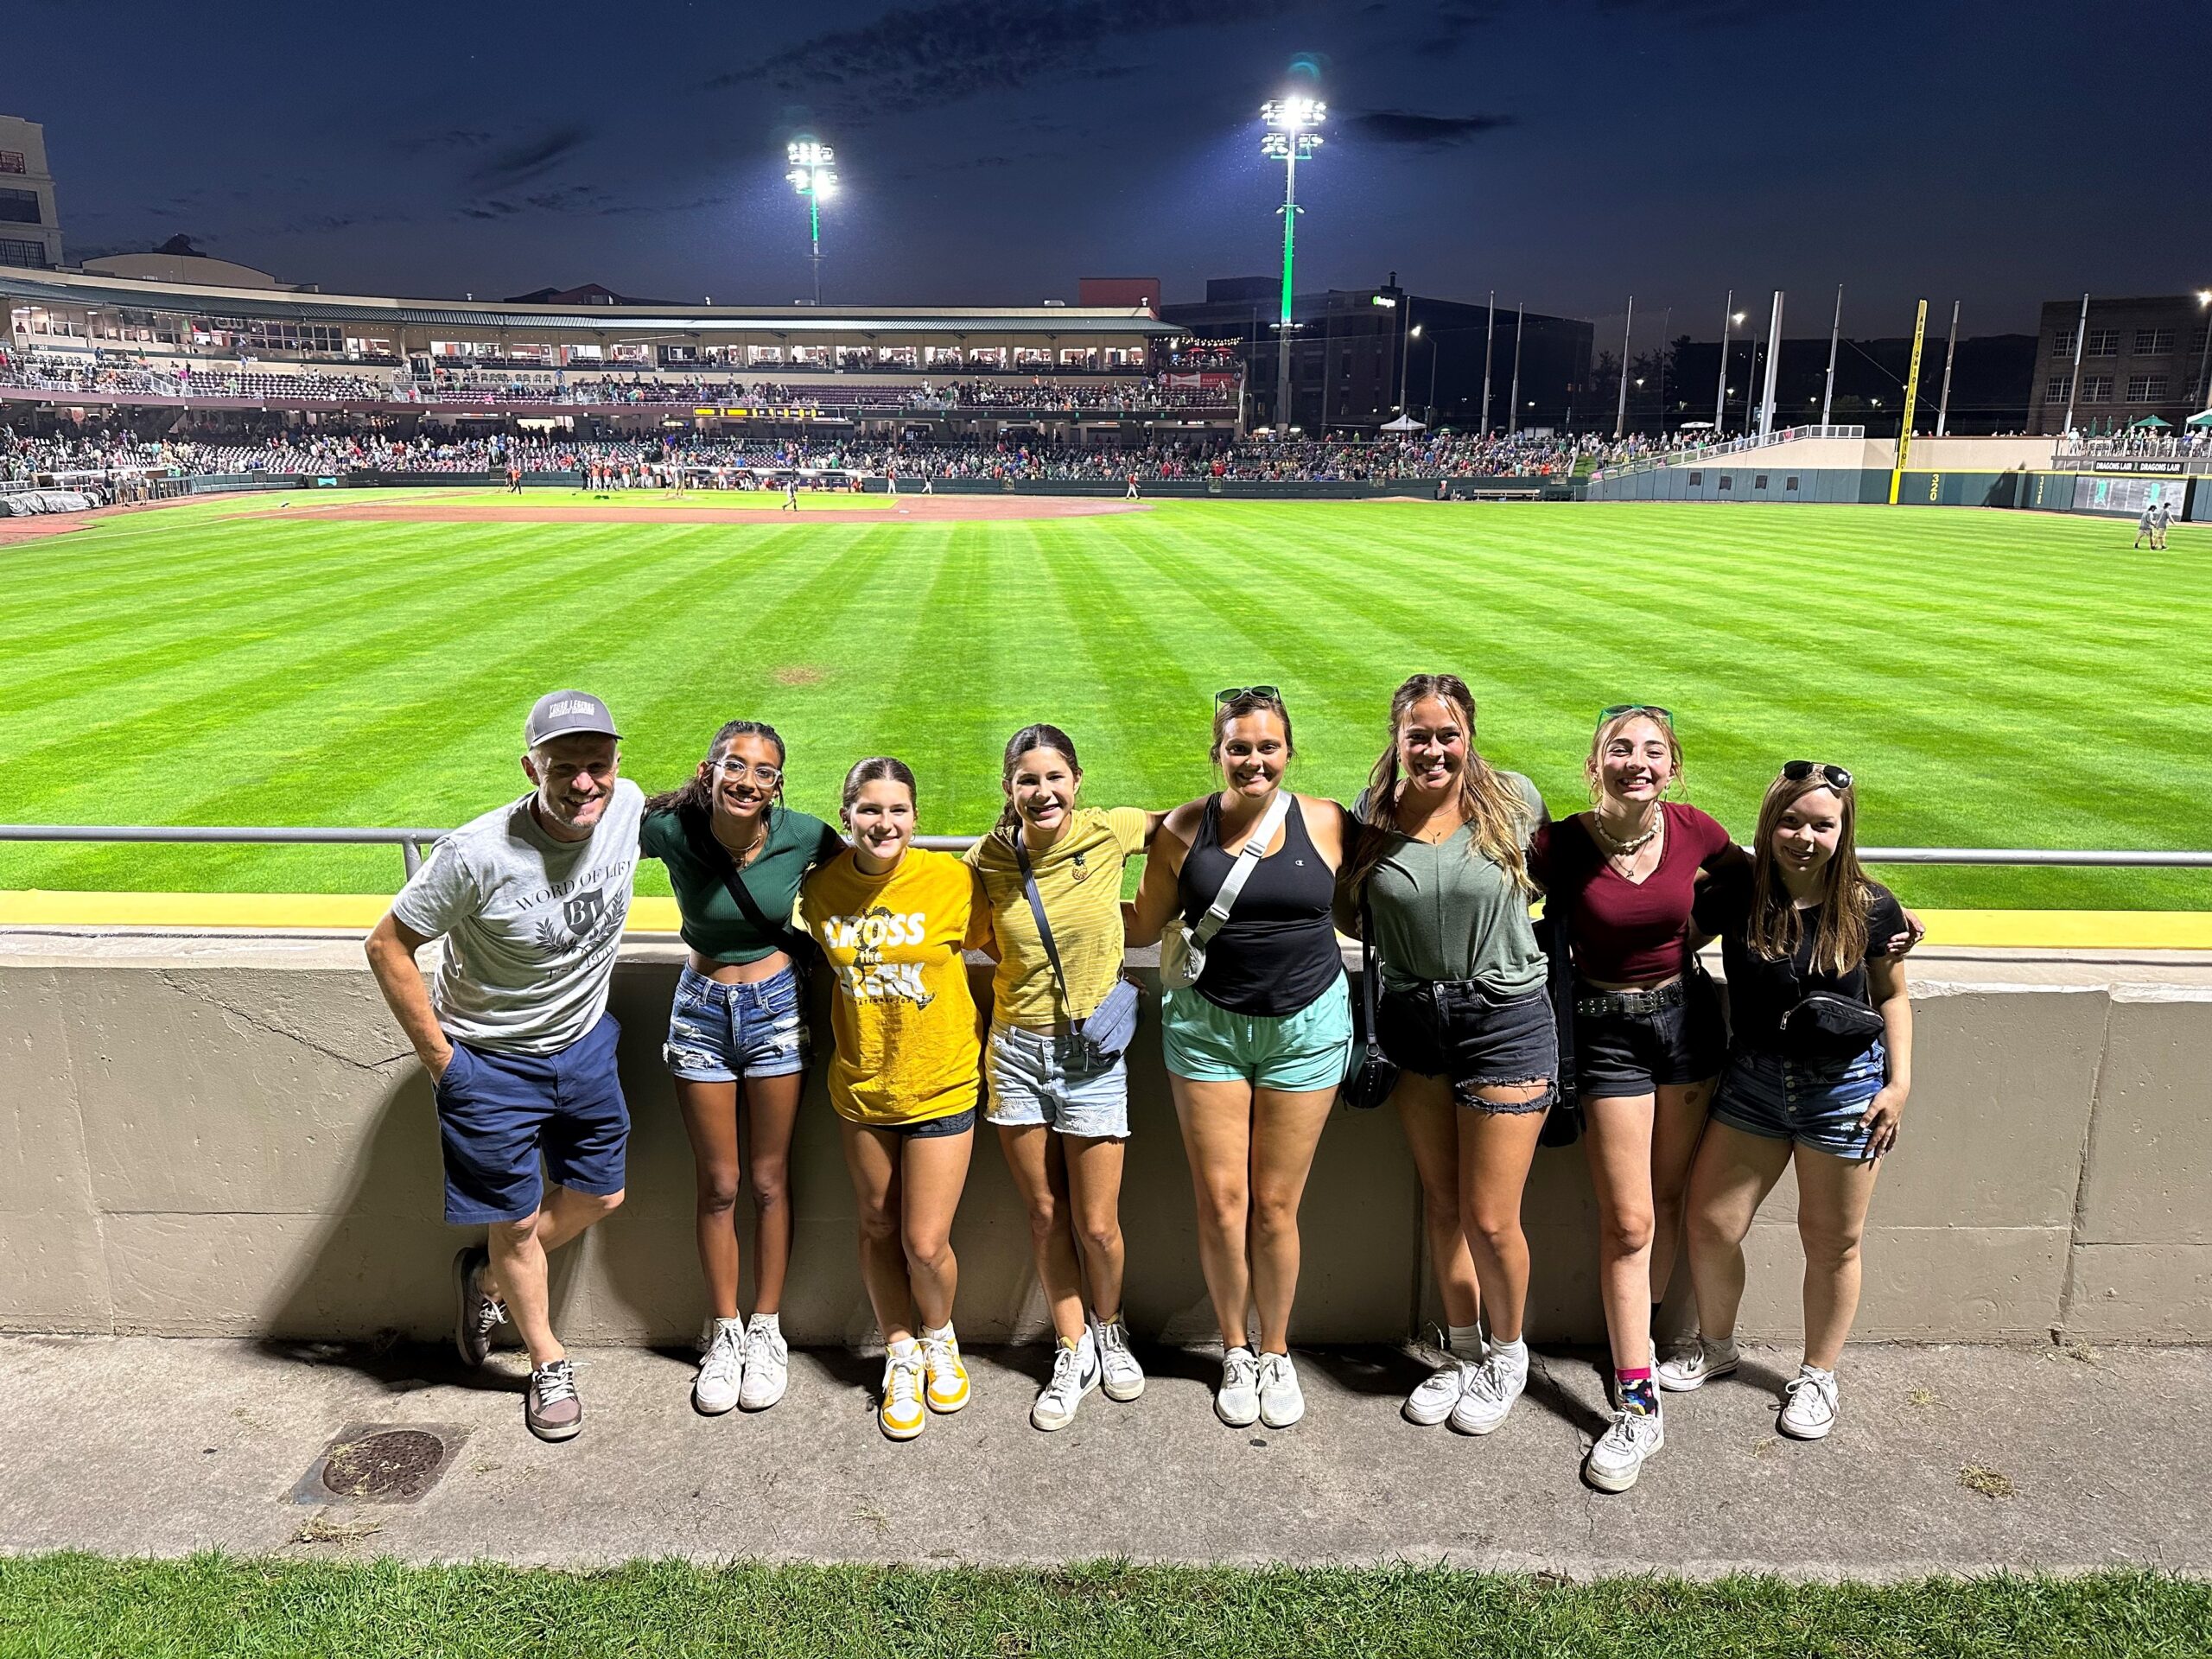 Youth Group at a Baseball game